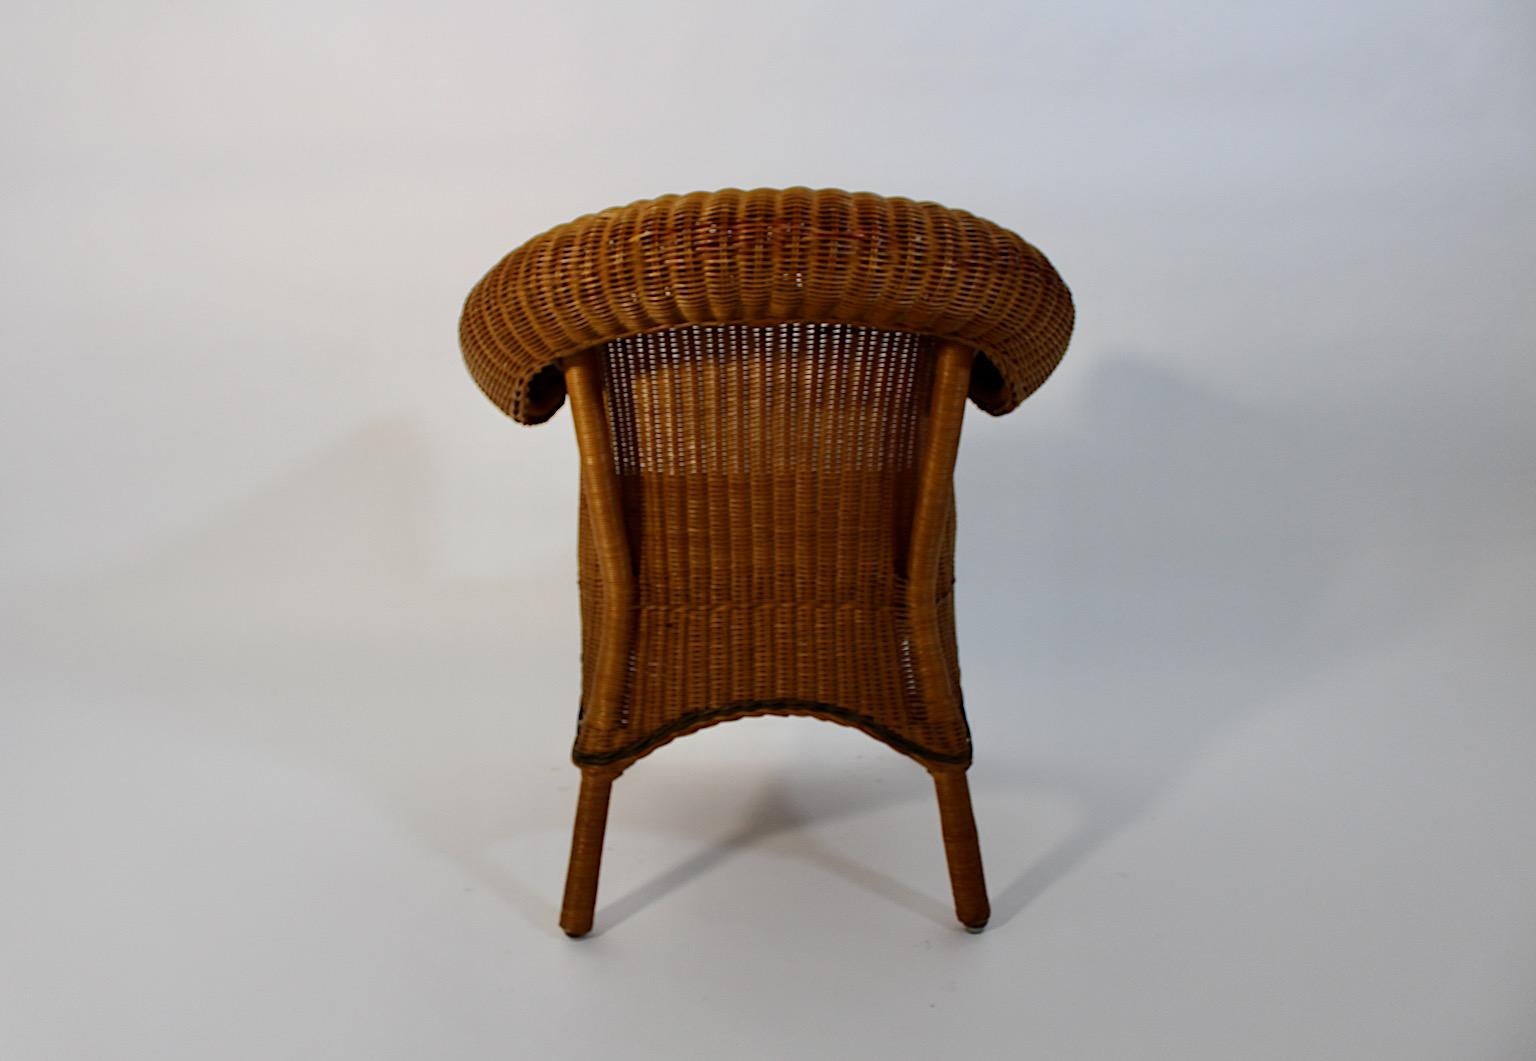 Jugendstil Vintage Rattan Armchair Lounge Chair Prag-Rudniker Korbwaren c 1910 For Sale 2